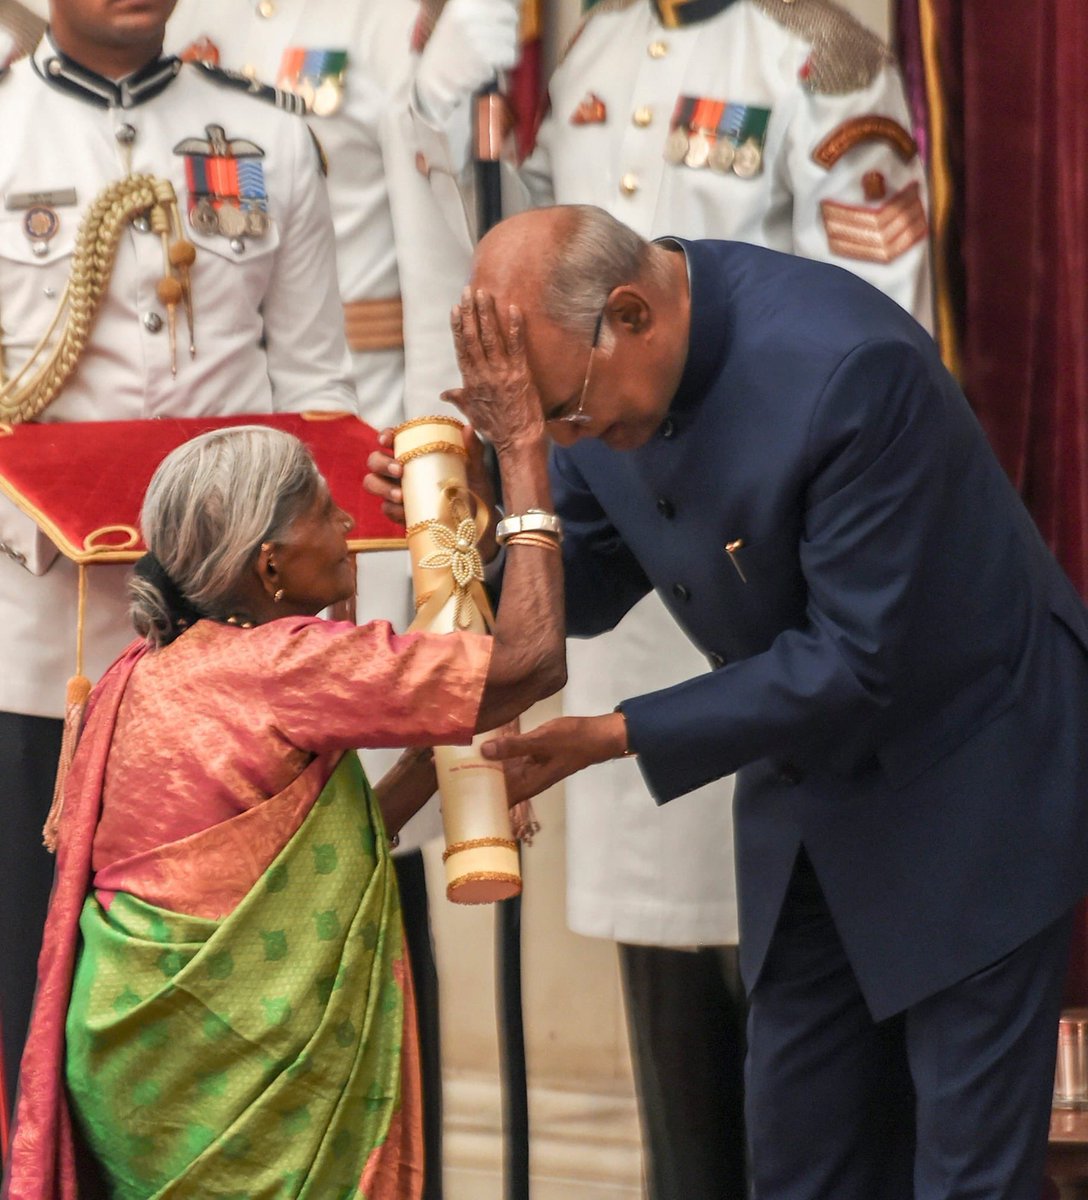 पद्म पुरस्कारों से राष्ट्र की सबसे श्रेष्ठ और योग्य प्रतिभाओं को सम्मानित करना राष्ट्रपति के लिए प्रसन्नता का विषय होता है। लेकिन आज जब पर्यावरण की रक्षा में तत्पर, कर्नाटक की 107 वर्ष की वयोवृद्धा सालुमरदा तिम्मक्का ने आशीर्वाद देते हुए मेरे सिर पर हाथ रखा तो मेरा हृदय भर आया।